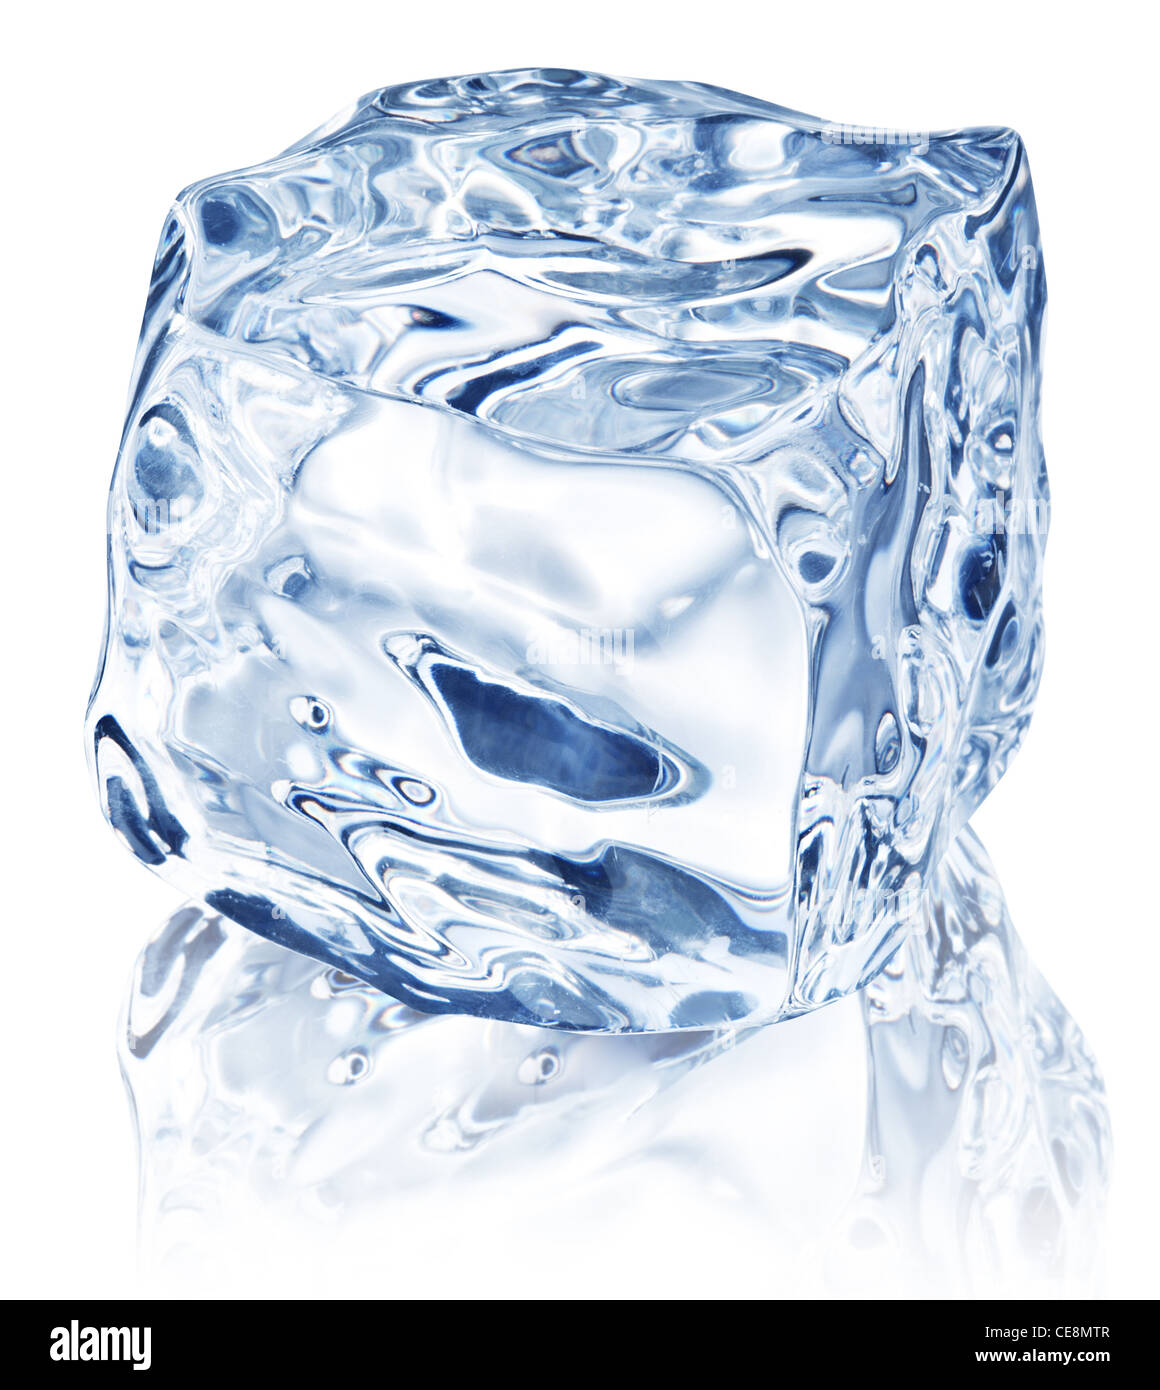 Cubetto di ghiaccio Immagini e Fotos Stock - Alamy